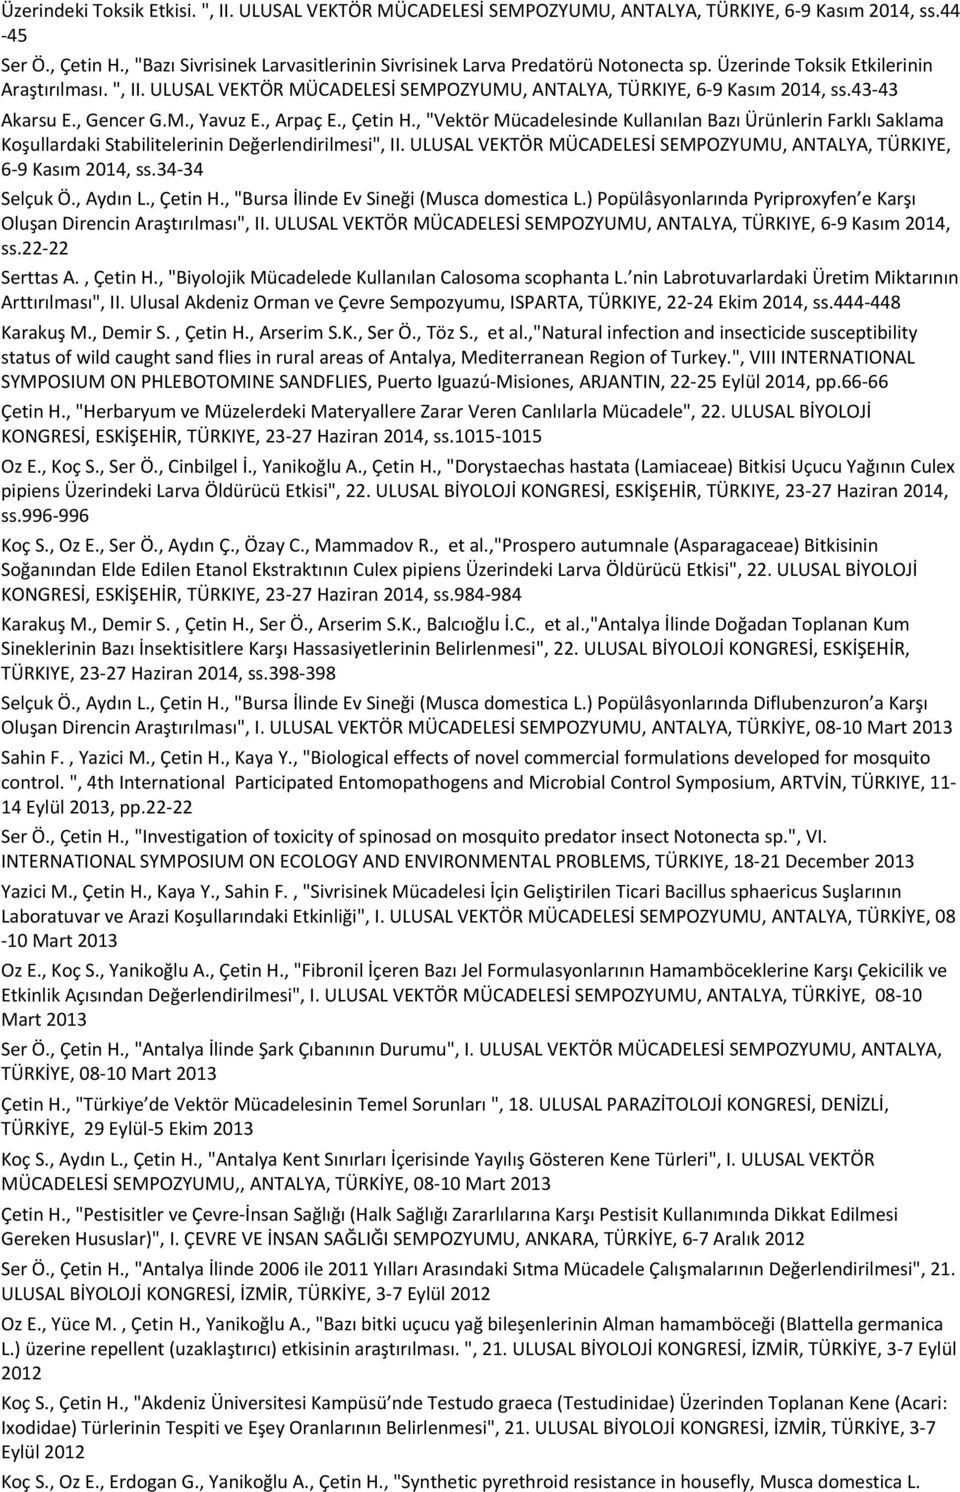 Üzerinde Toksik Etkilerinin Araştırılması. ", II. ULUSAL VEKTÖR MÜCADELESİ SEMPOZYUMU, ANTALYA, TÜRKIYE, 6-9 Kasım 2014, ss.43-43 Akarsu E., Gencer G.M., Yavuz E., Arpaç E., Çetin H.